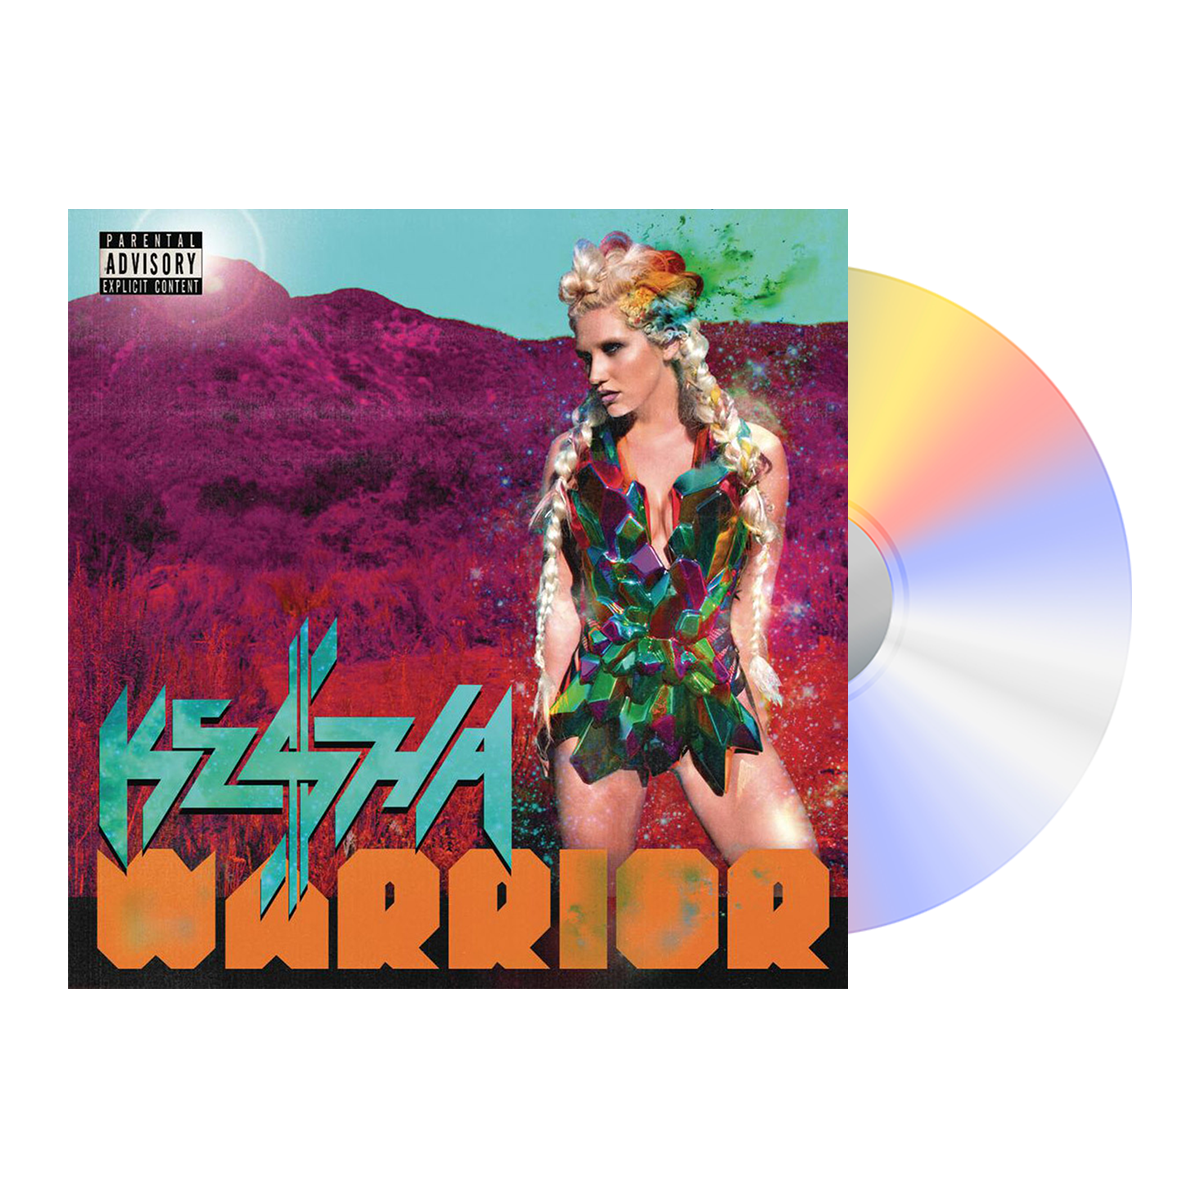 Warrior Deluxe CD